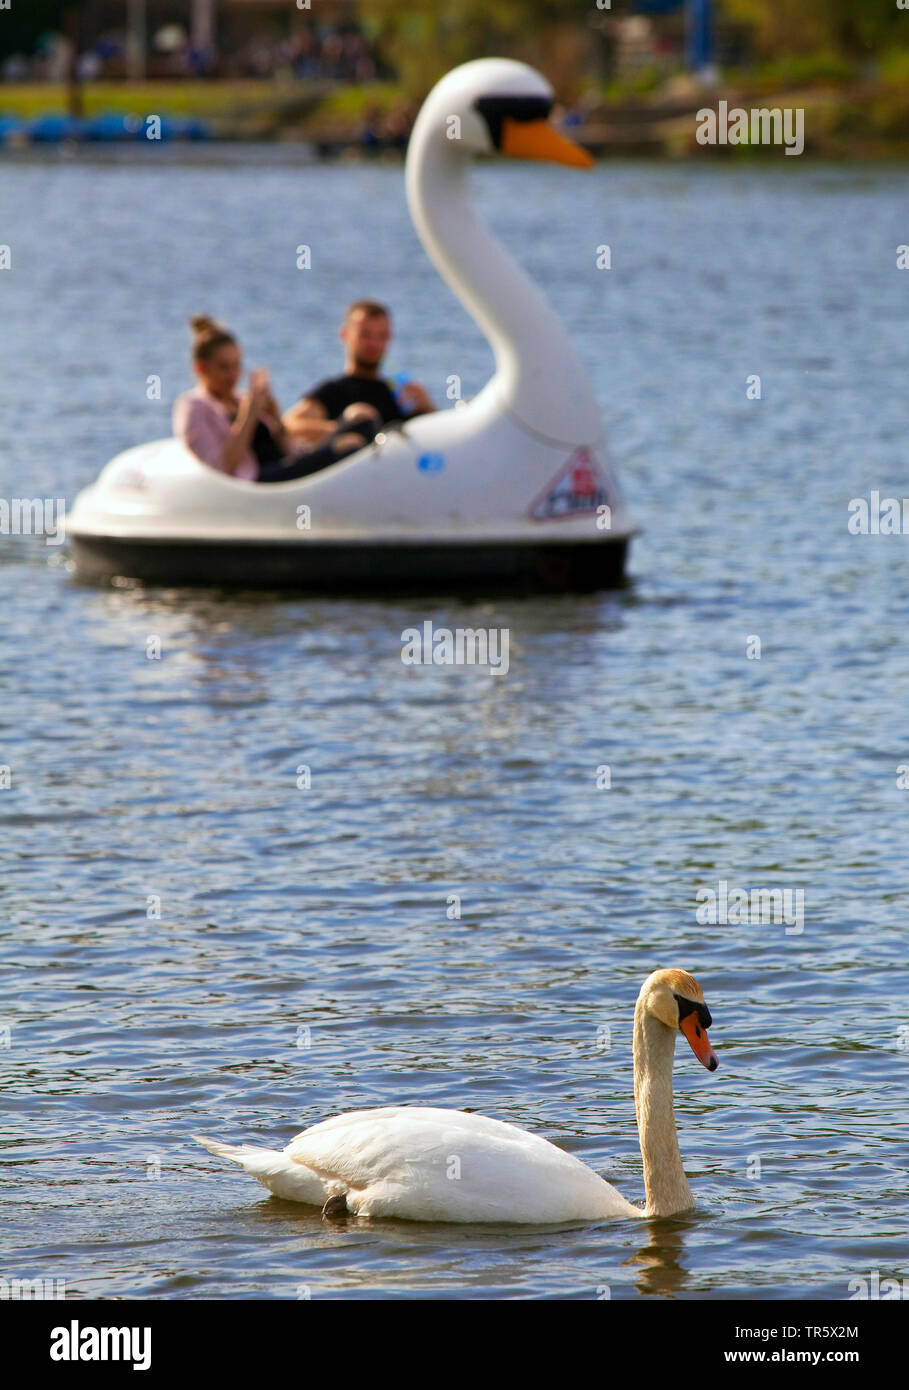 Mute swan (Cygnus olor), en avant d'un pédalo en forme de cygne sur le lac, l'Allemagne, l'Kemnade Rhénanie du Nord-Westphalie, région de la Ruhr, Bochum Banque D'Images